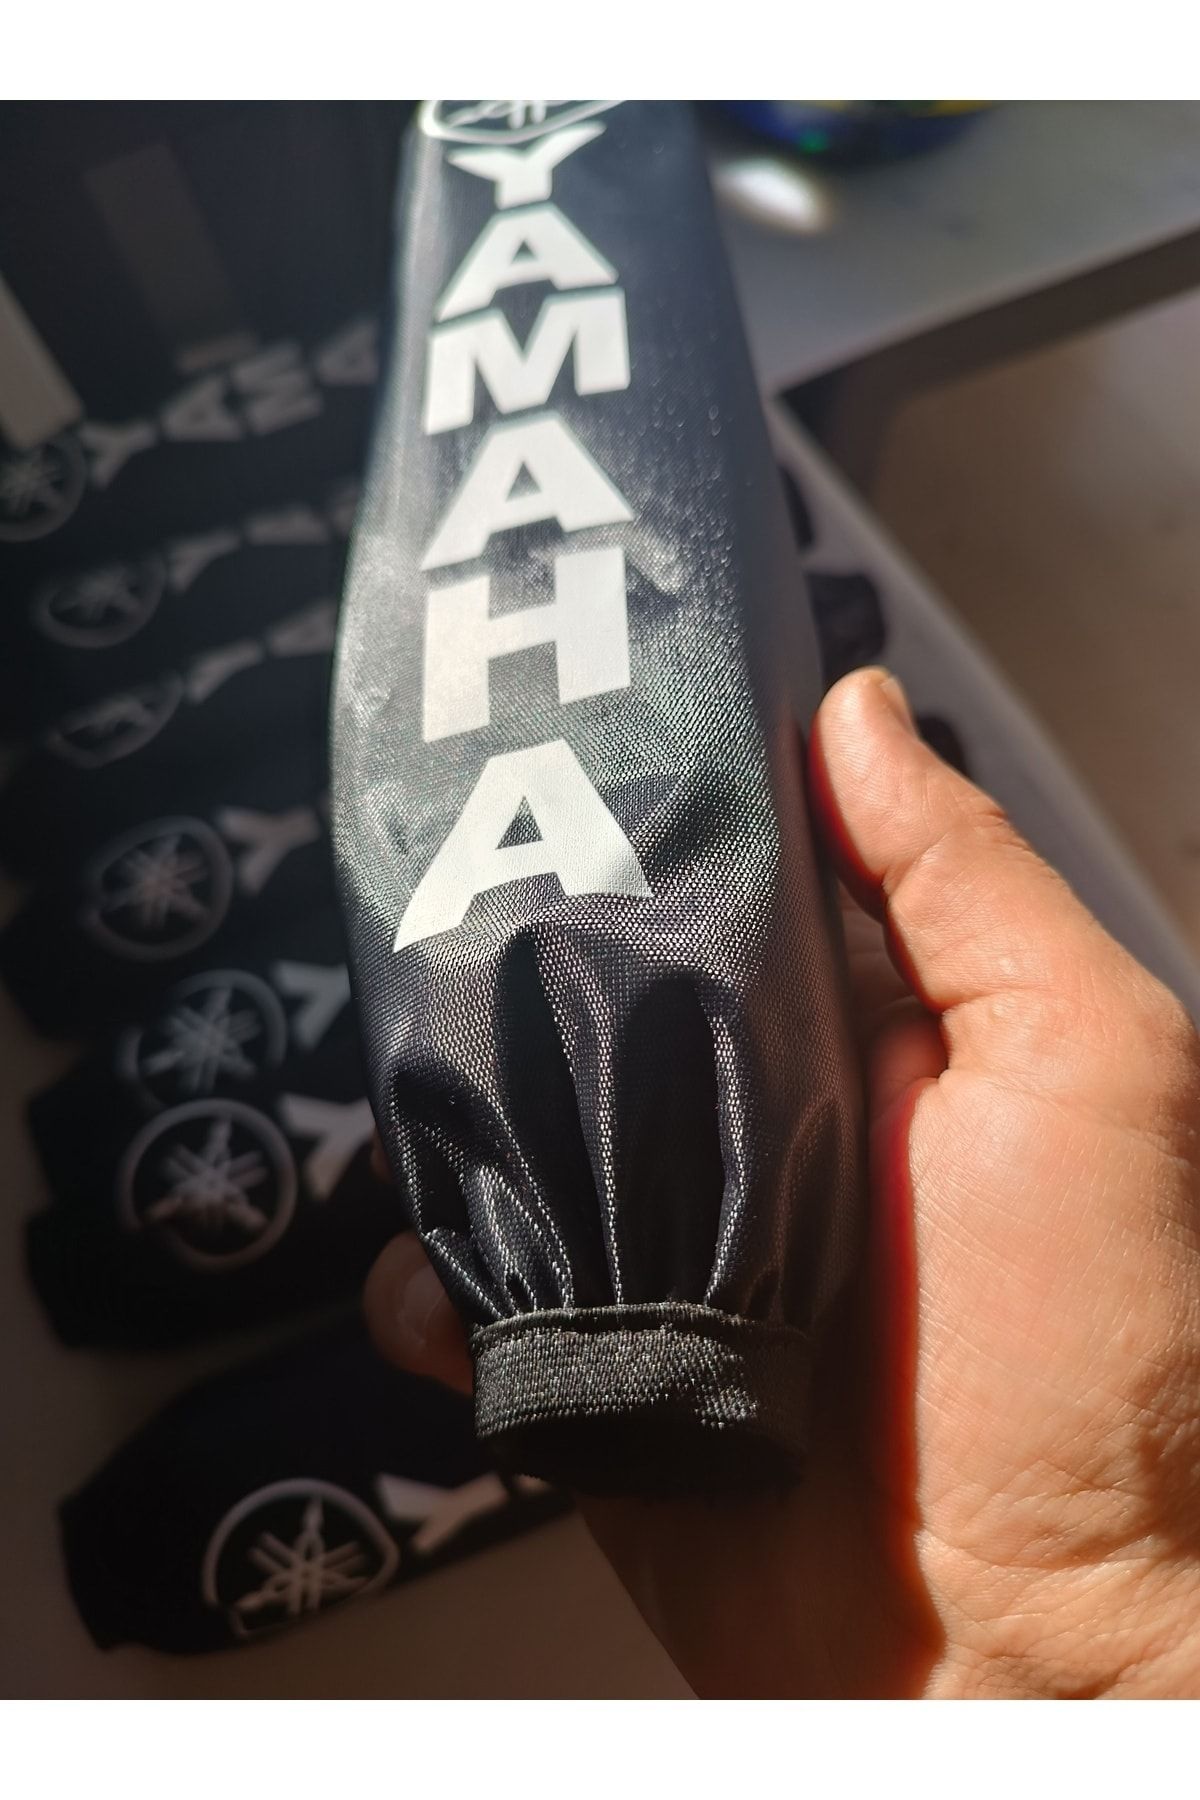 Yamaha X-max/n-max Amortisör Kılıfı Corabı Refklektörlü